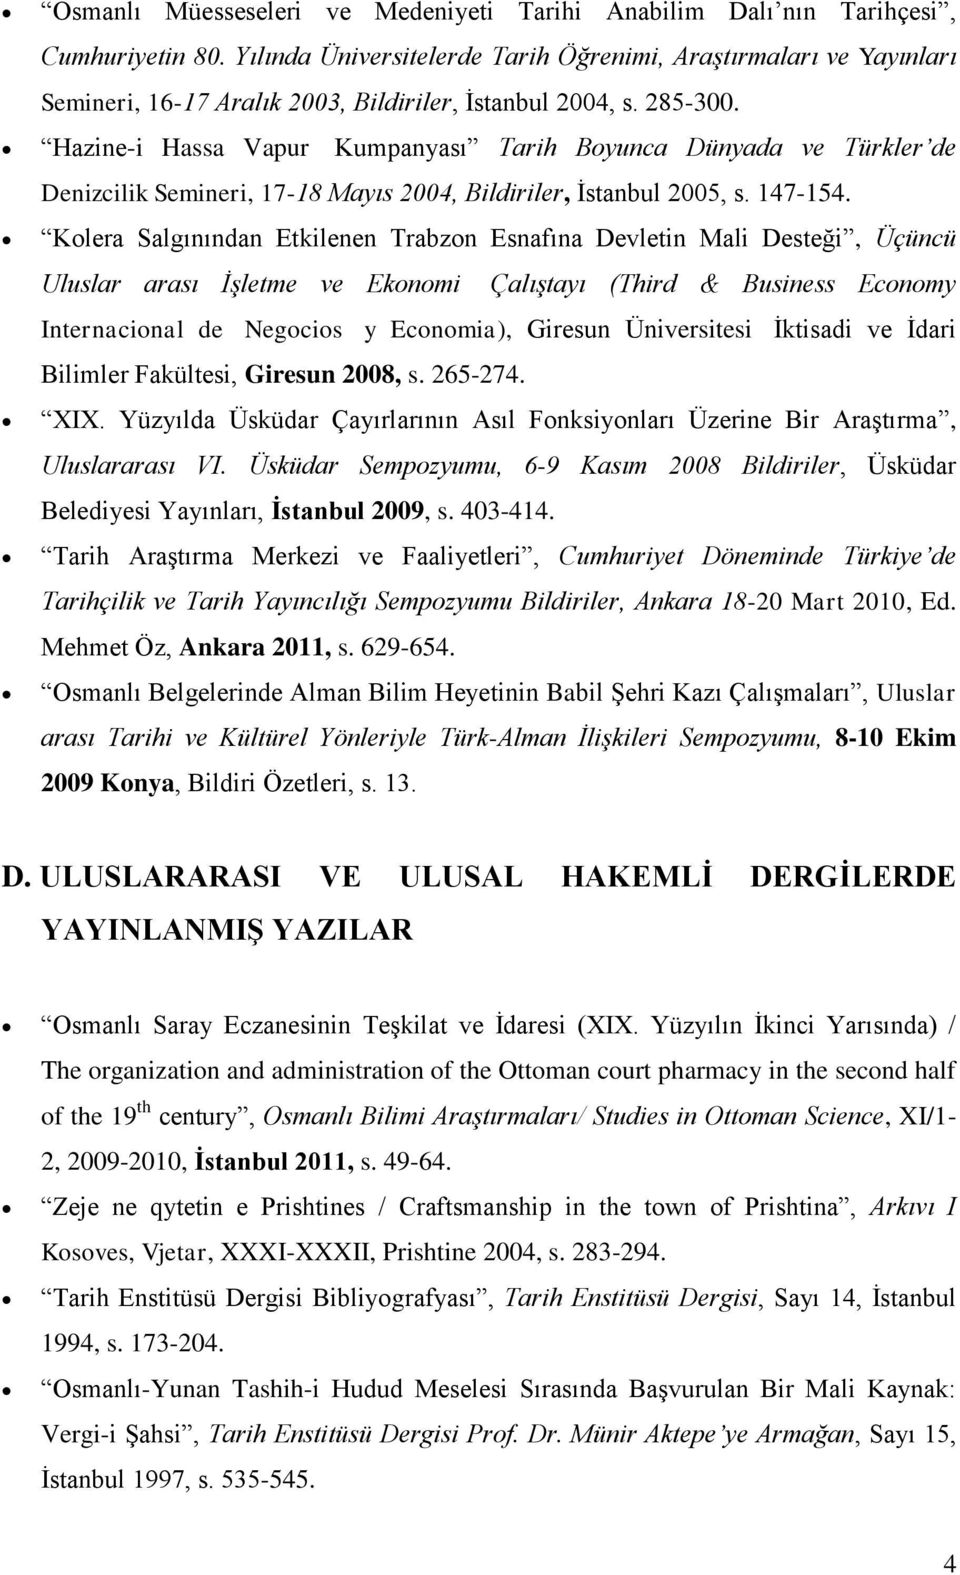 Hazine-i Hassa Vapur Kumpanyası Tarih Boyunca Dünyada ve Türkler de Denizcilik Semineri, 17-18 Mayıs 2004, Bildiriler, İstanbul 2005, s. 147-154.